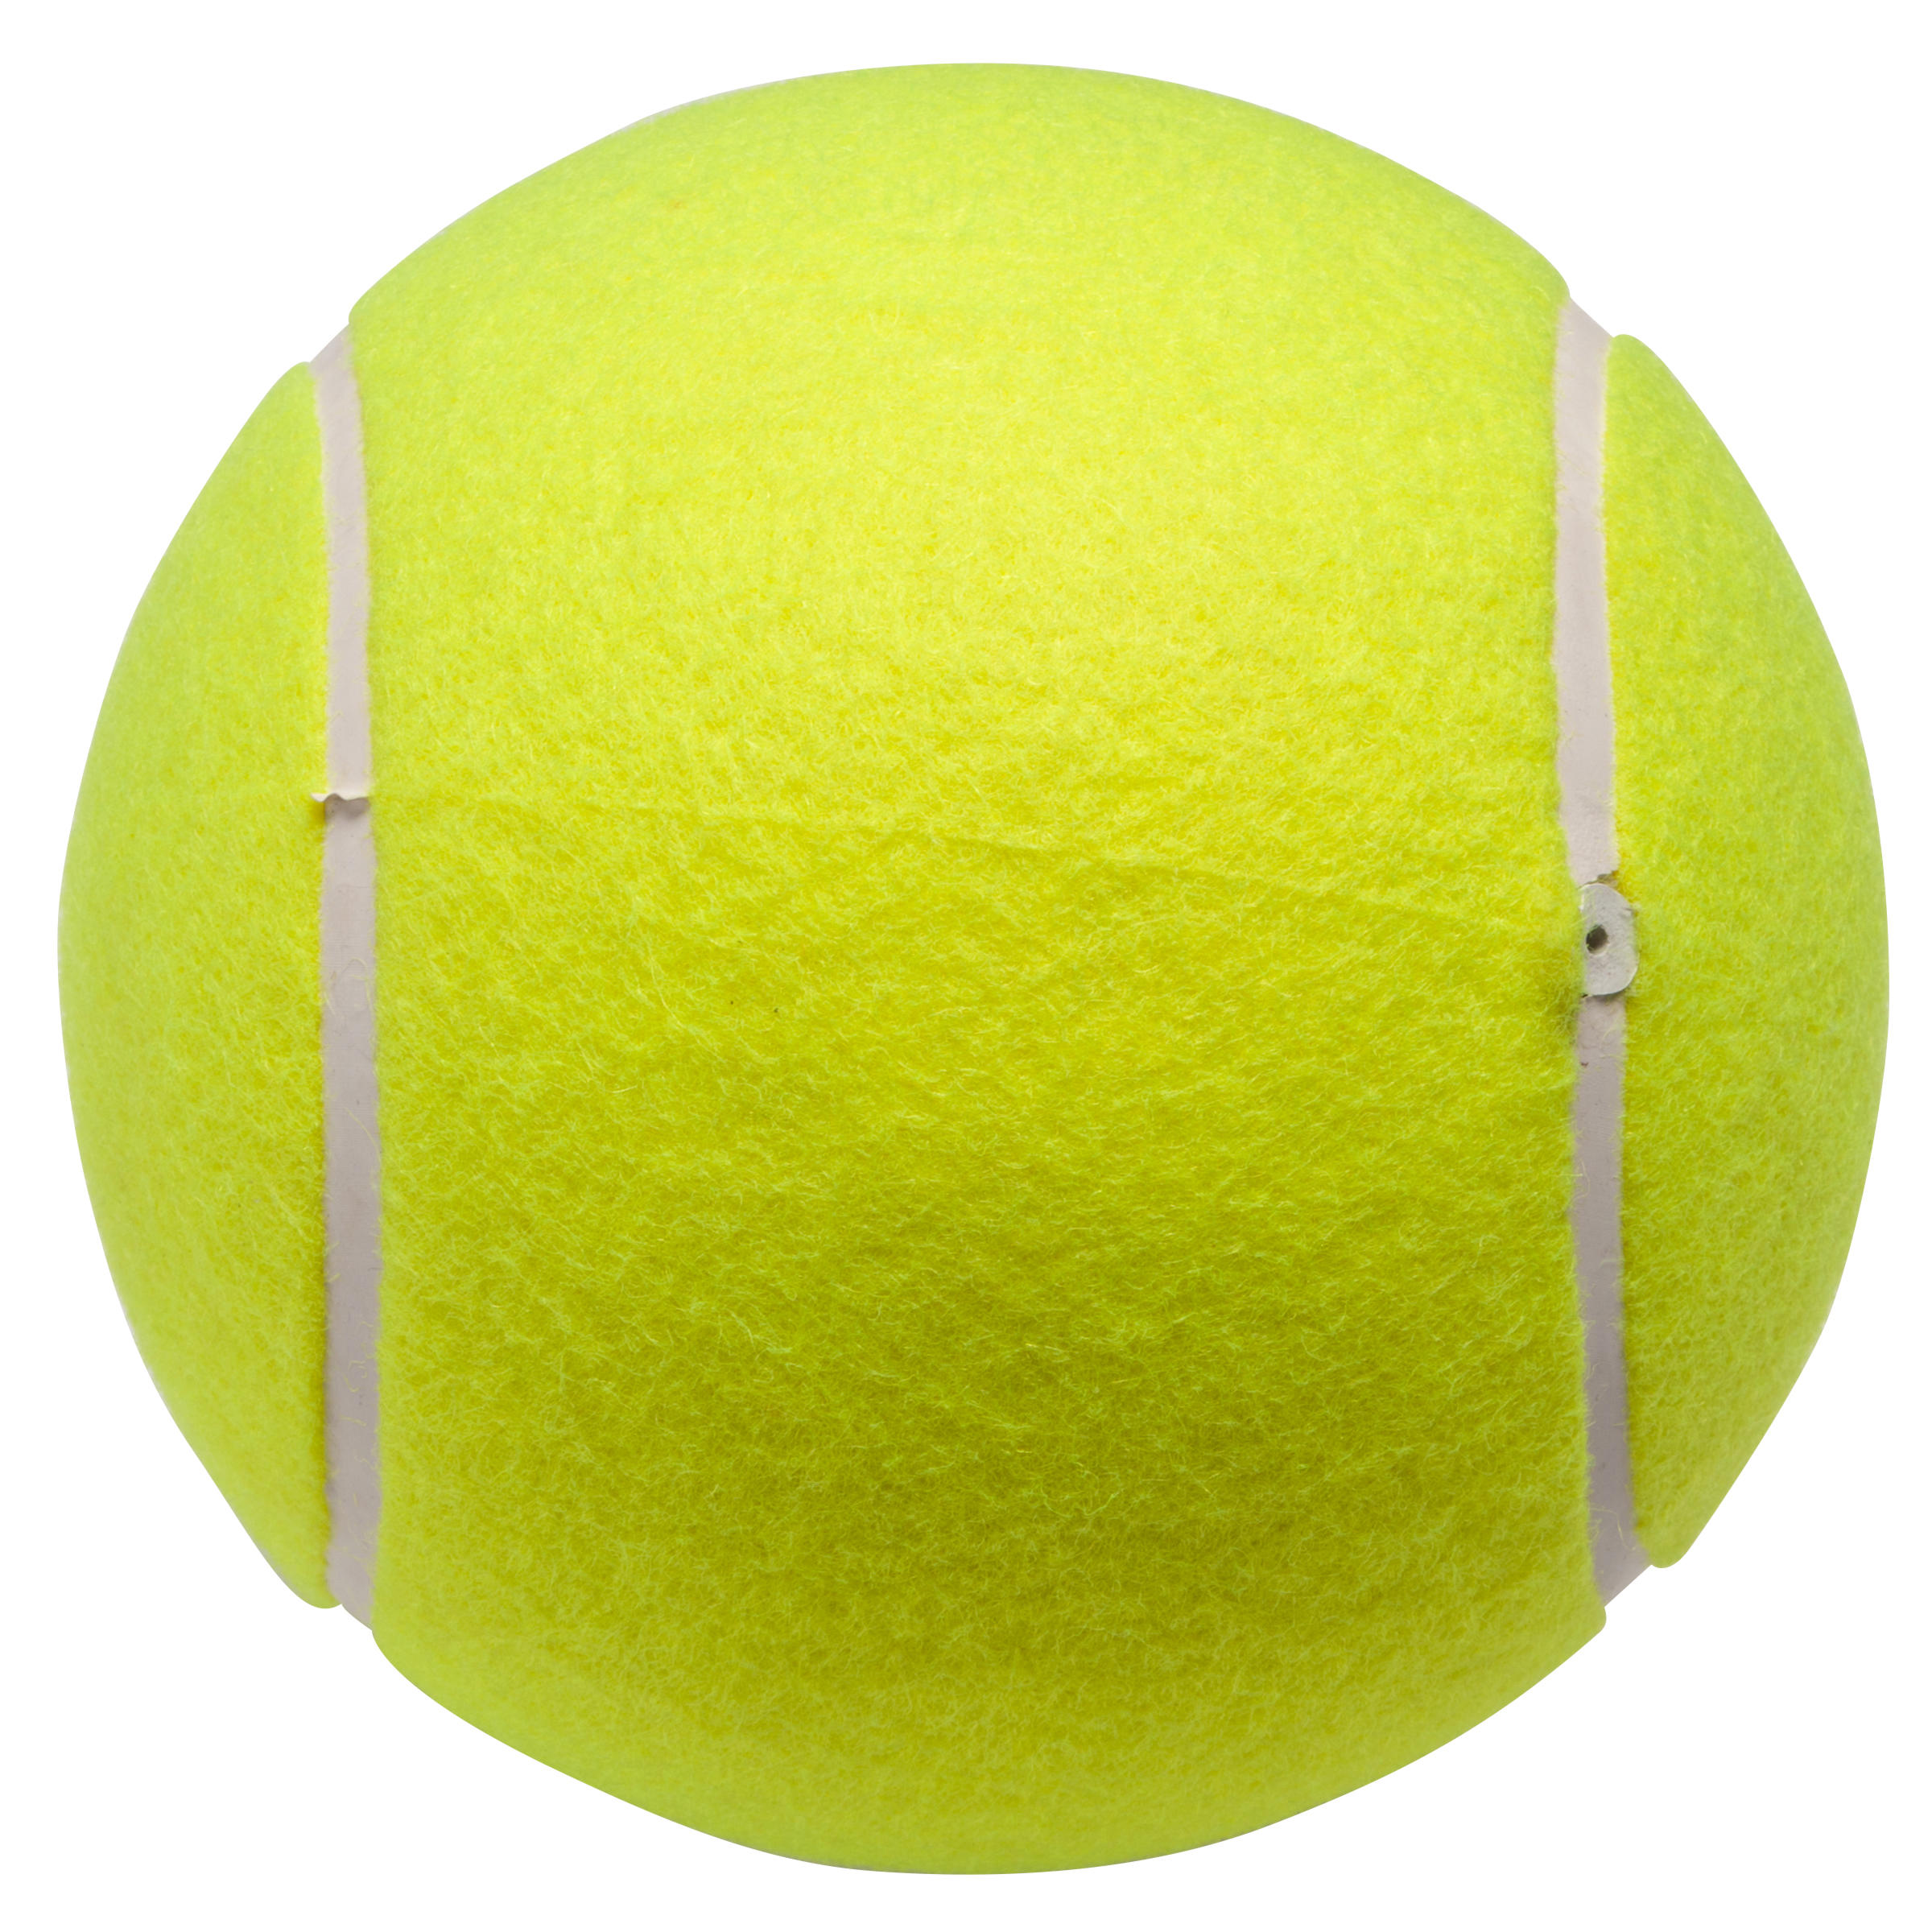 balle de tennis enfant flou Photos